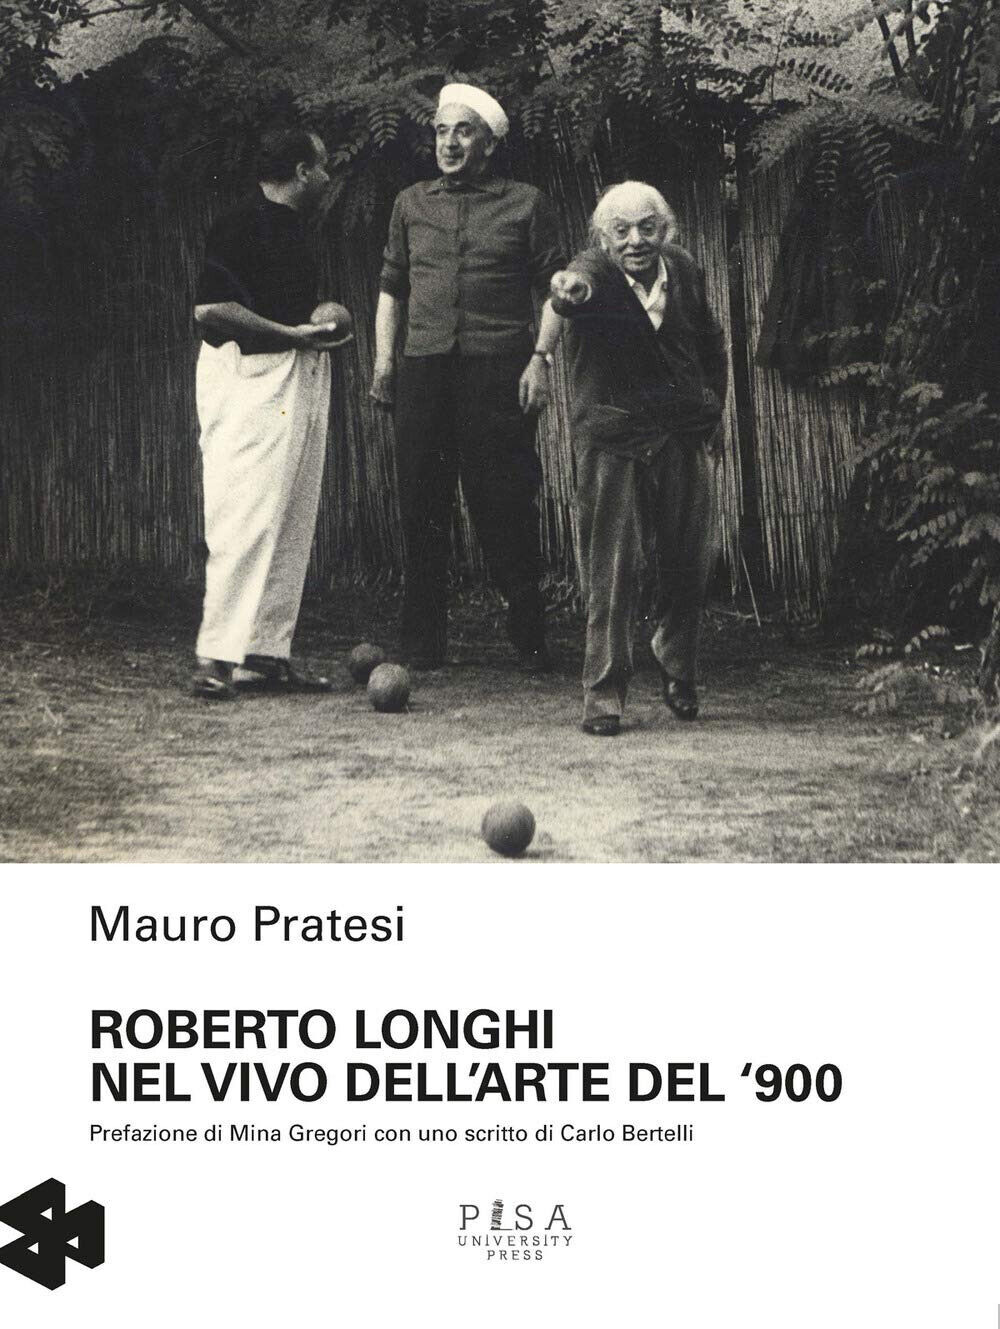 Roberto Longhi nel vivo dell'arte del '900 - Mauro Pratesi - 2020